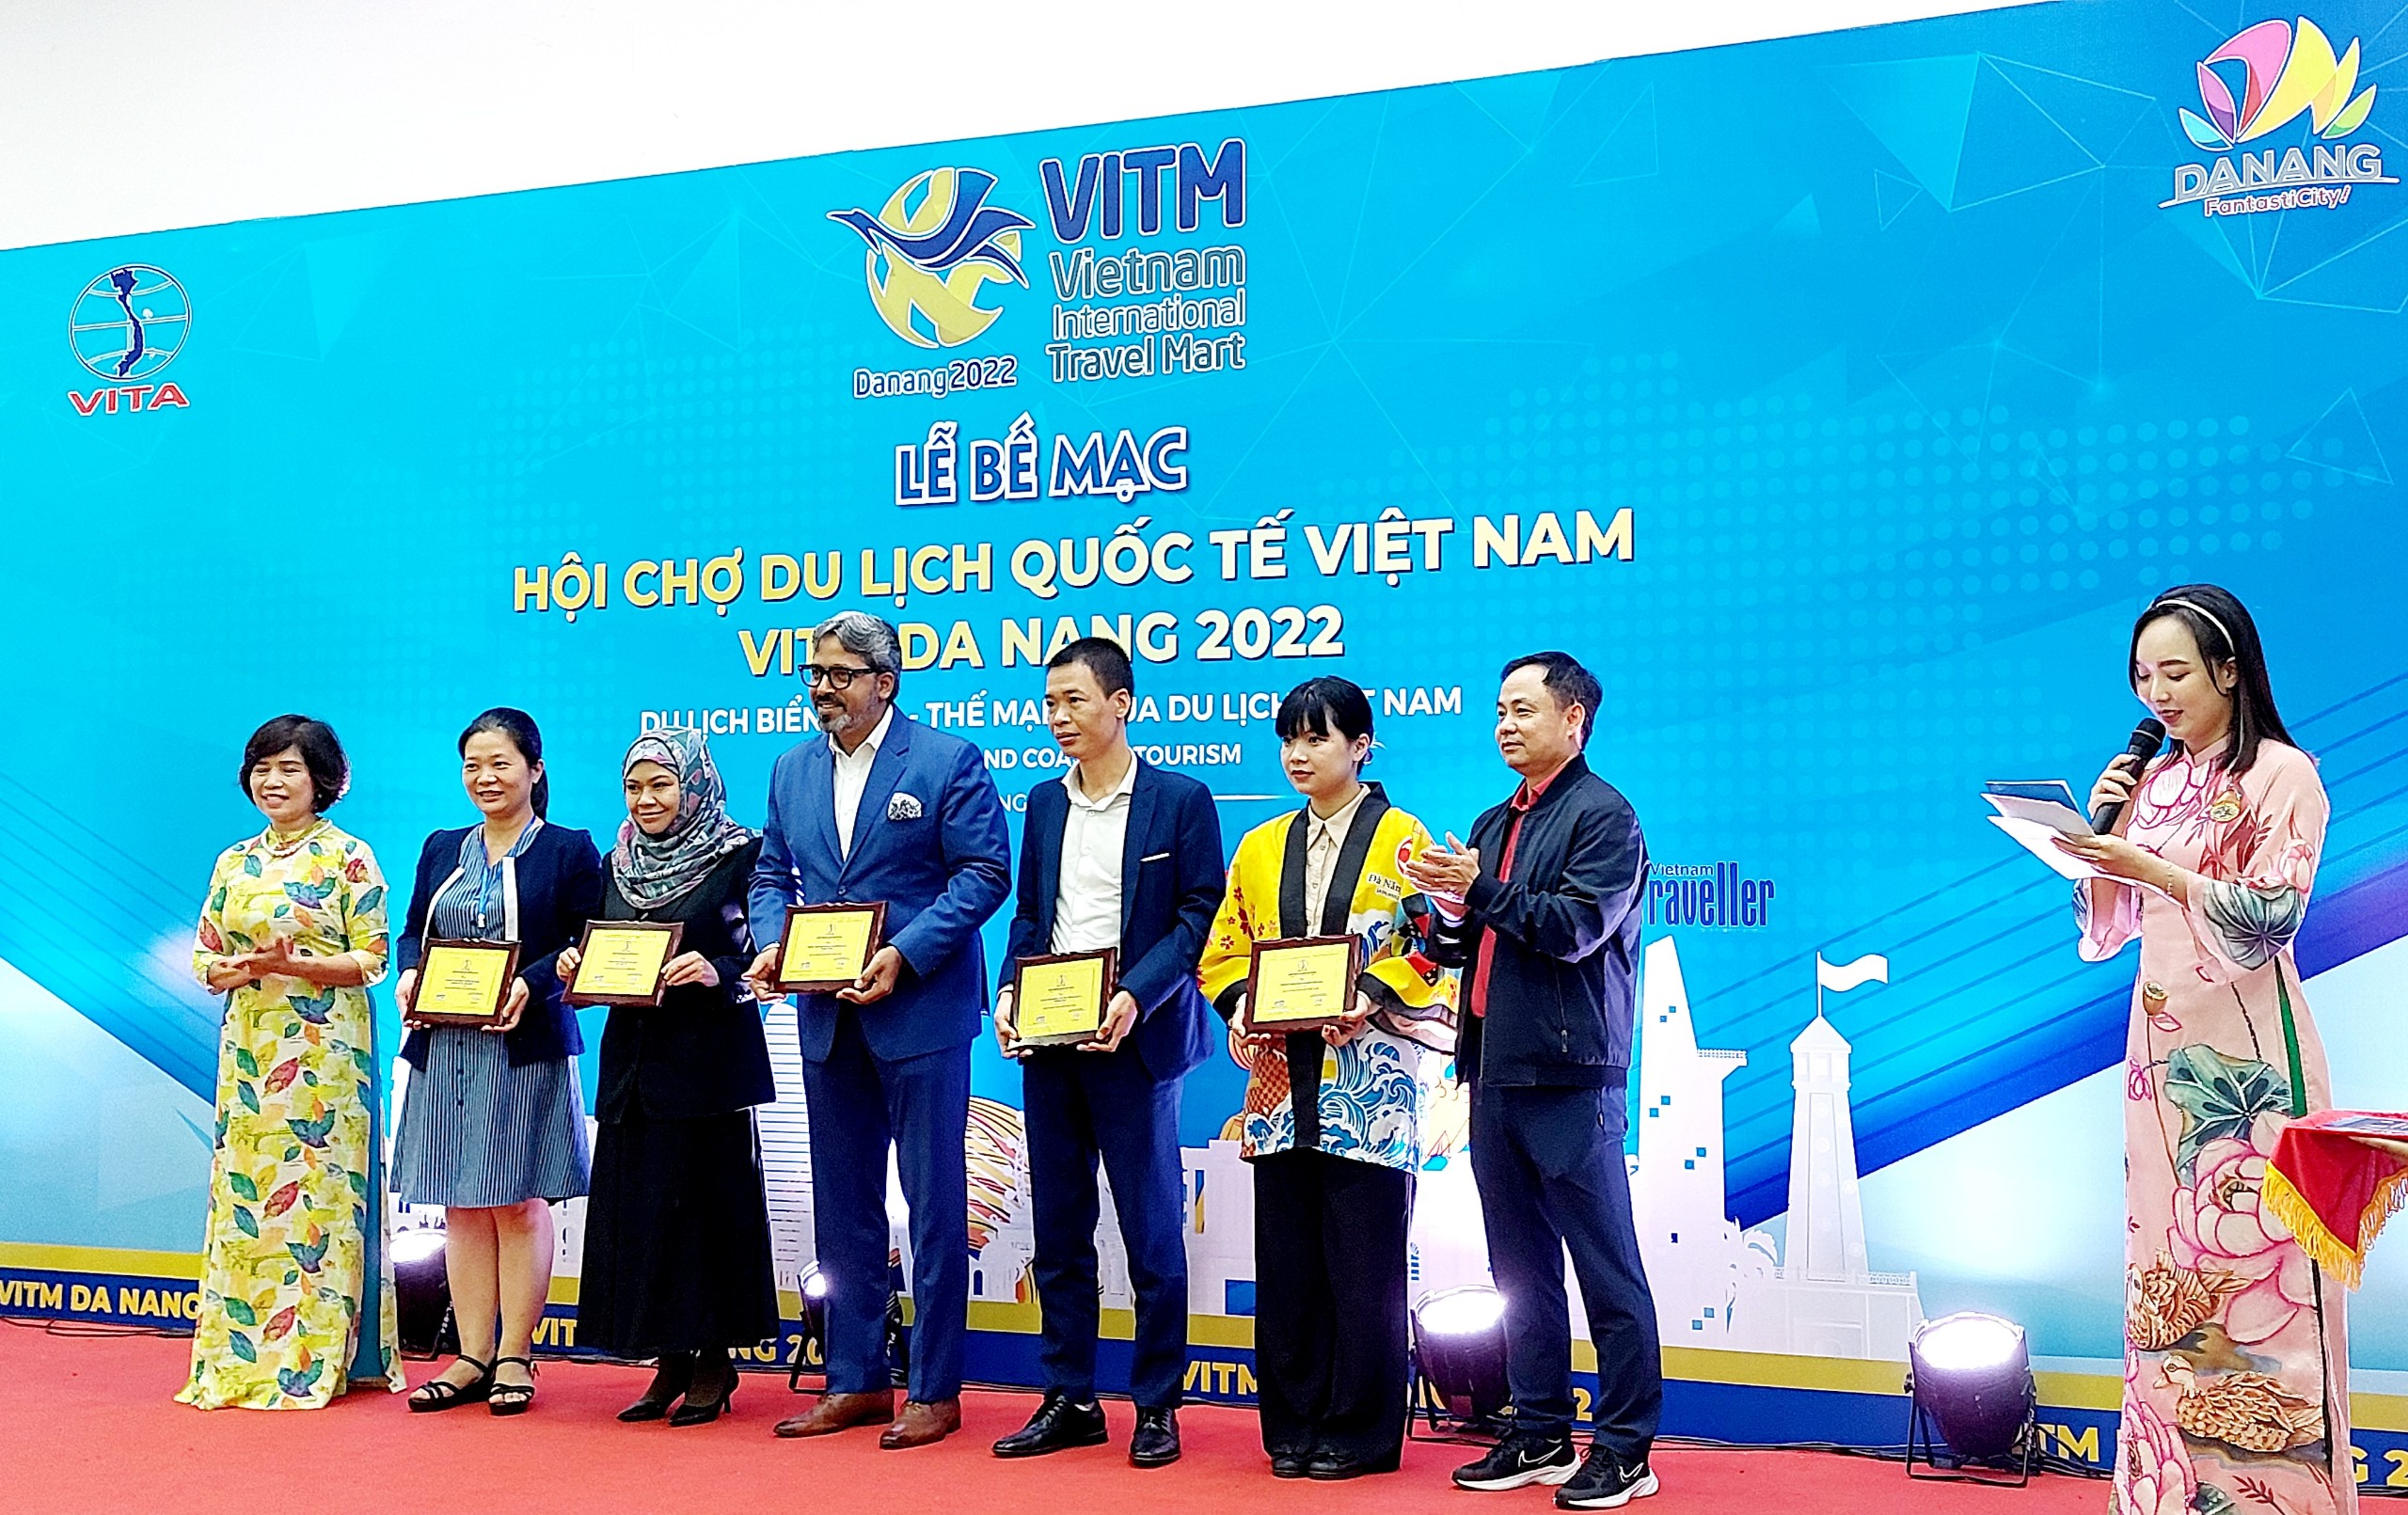 Phó Chủ tịch Thường trực HHDL Việt Nam Cao Thị Ngọc Lan và Phó Giám đốc Sở Du lịch Đà Nẵng Nguyễn Xuân Bình trao kỷ niệm chương cho các gian hàng kích cầu hiệu quả